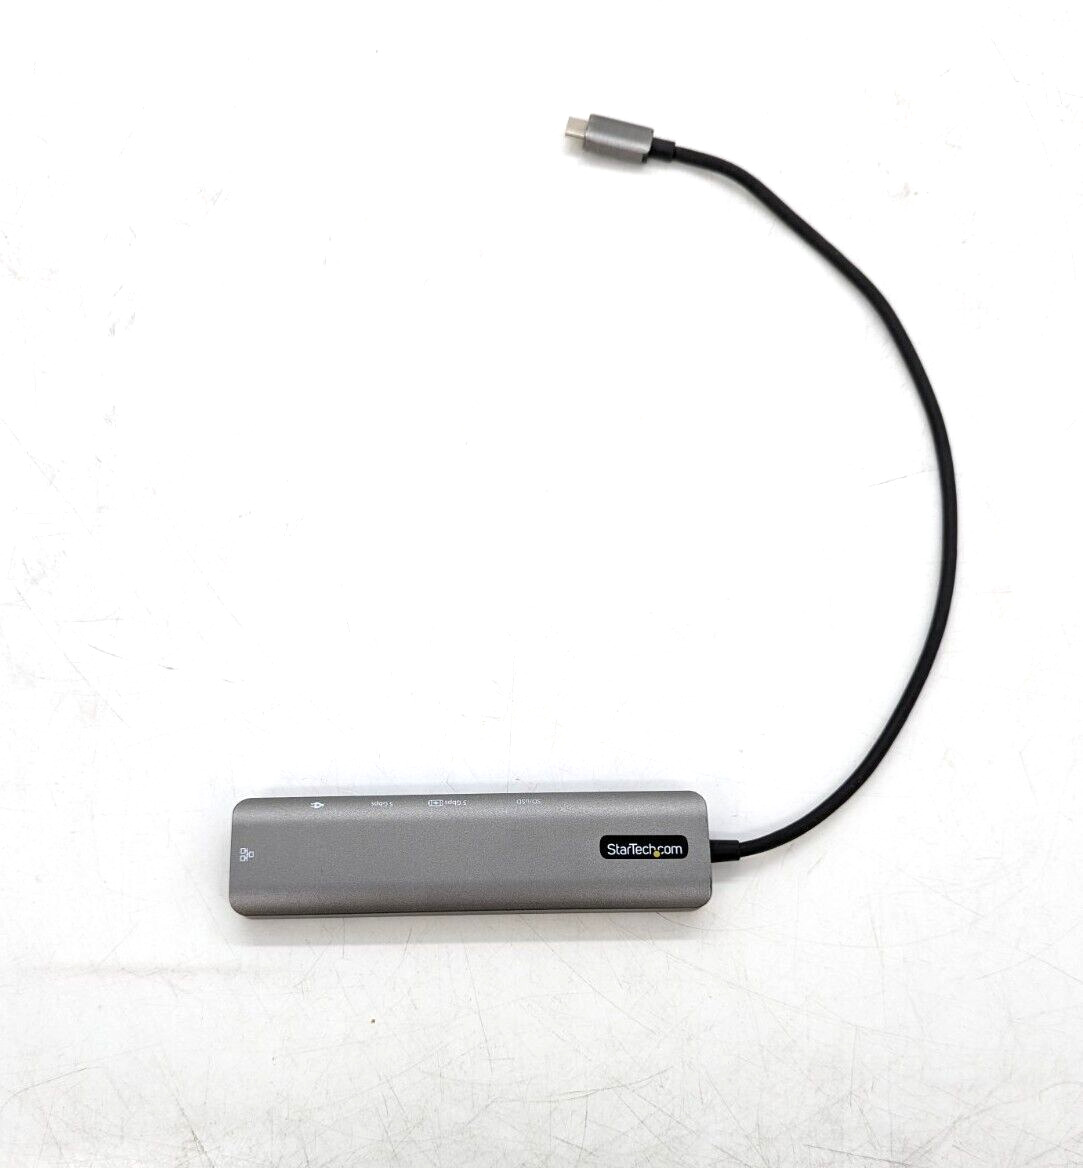 StarTech.com USB C Multiport Adapter DKT30CHSDPD1 - Used